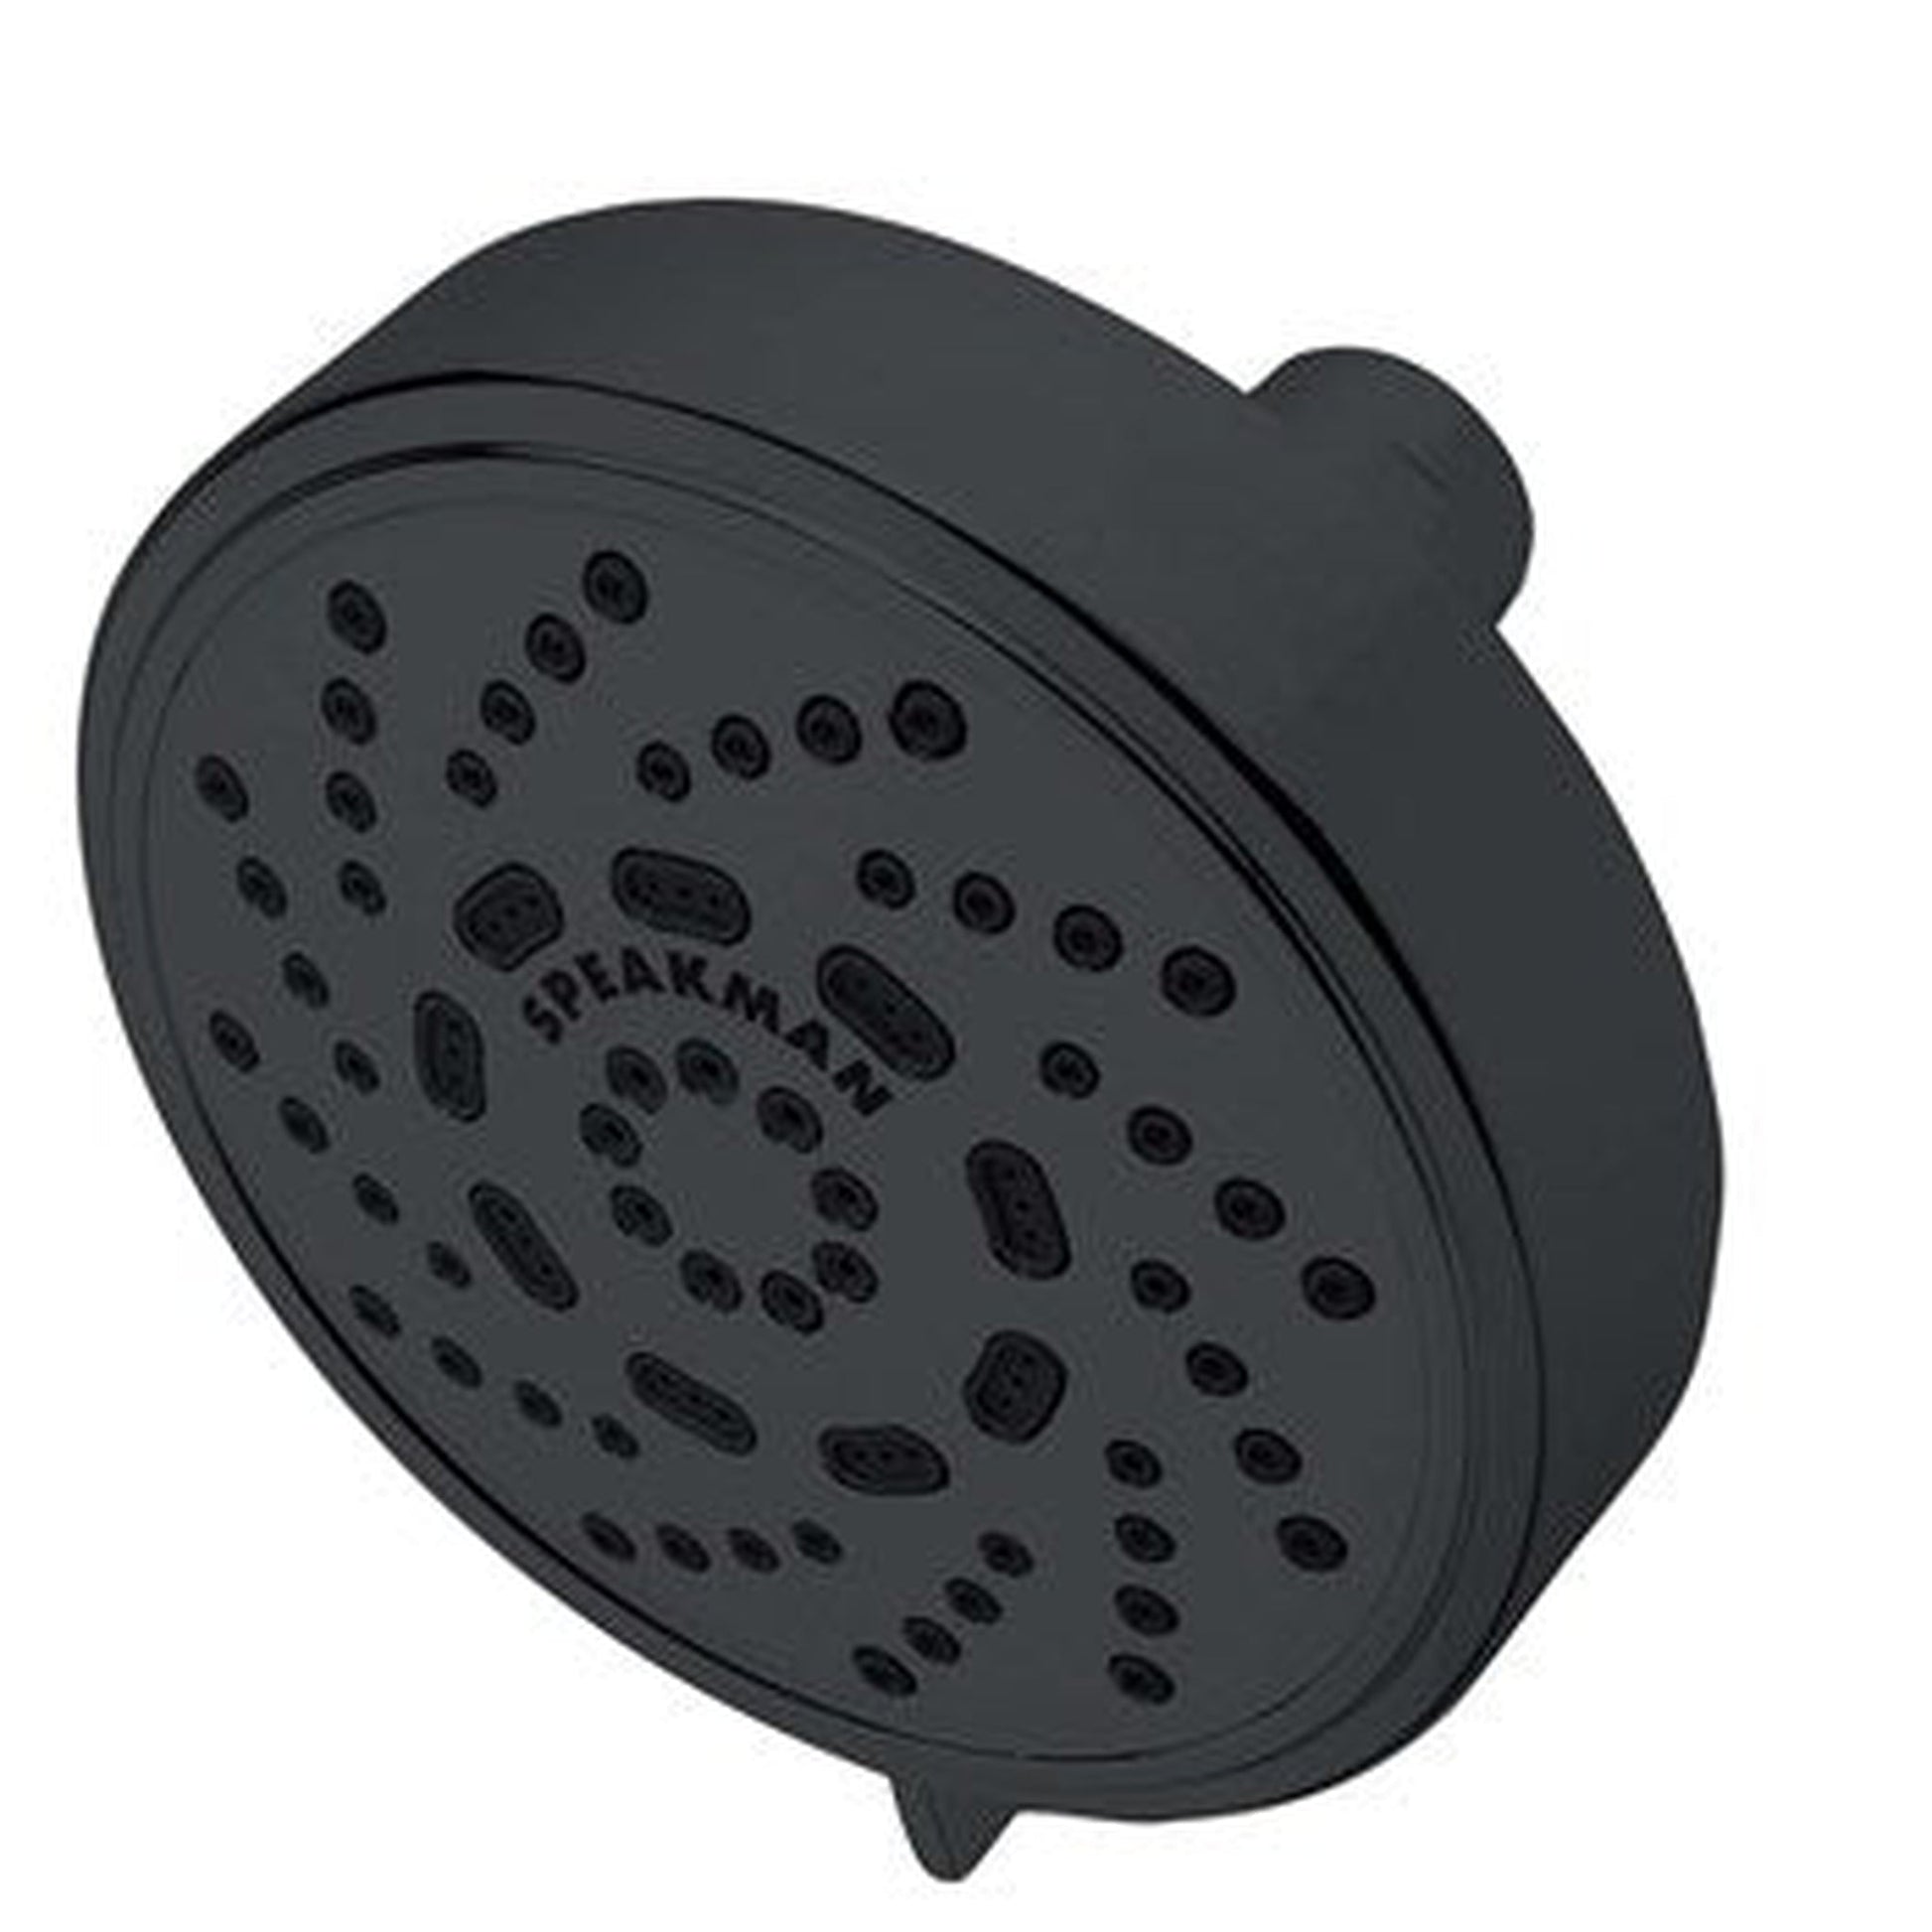 Speakman Echo 2.0 GPM Low Flow Matte Black Multi-Function Shower Head